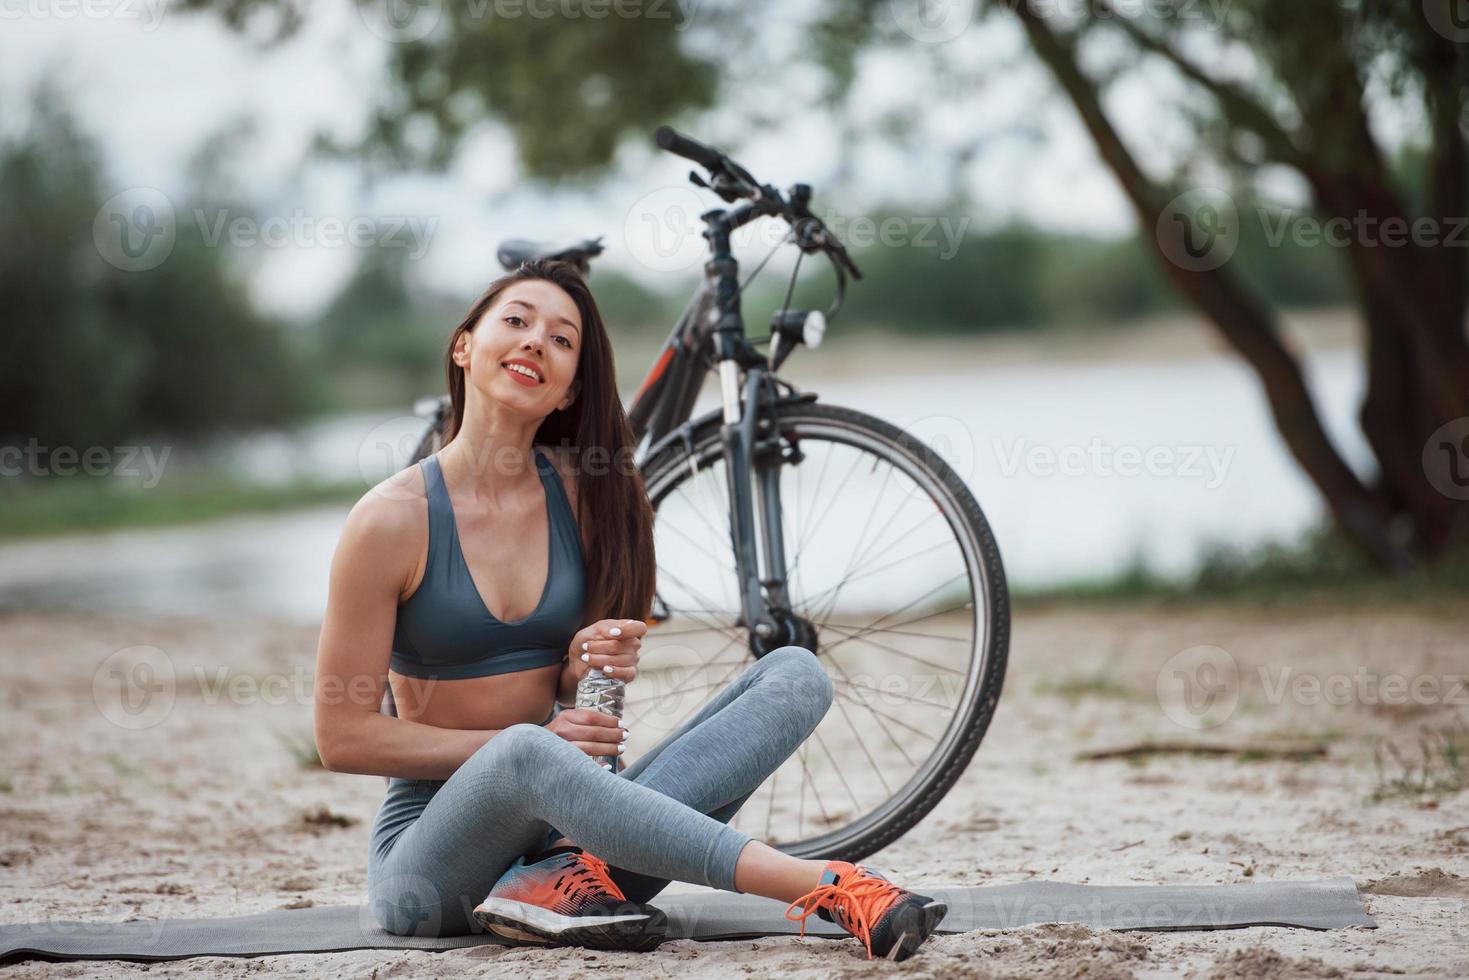 necesita recuperarse. ciclista femenina con buena forma corporal sentada cerca de su bicicleta en la playa durante el día foto